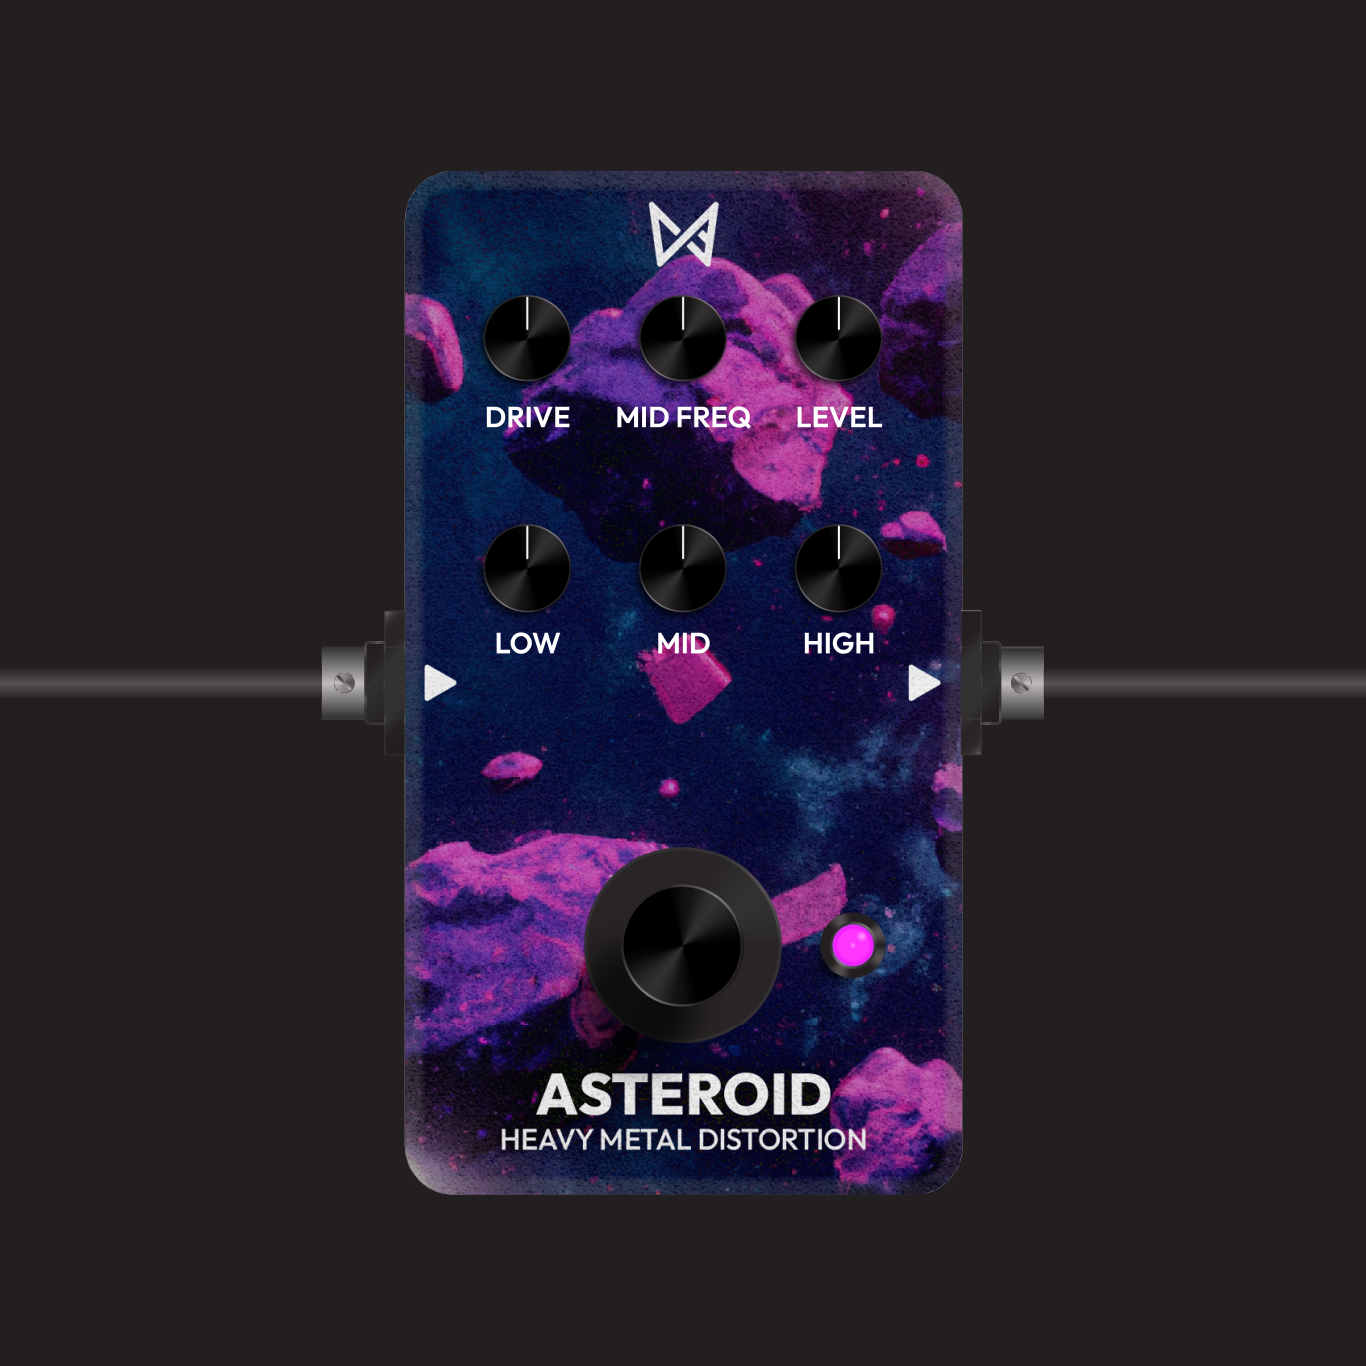 Asteroid_1x_71544937-0522-4d4d-9572-fef144c199c8